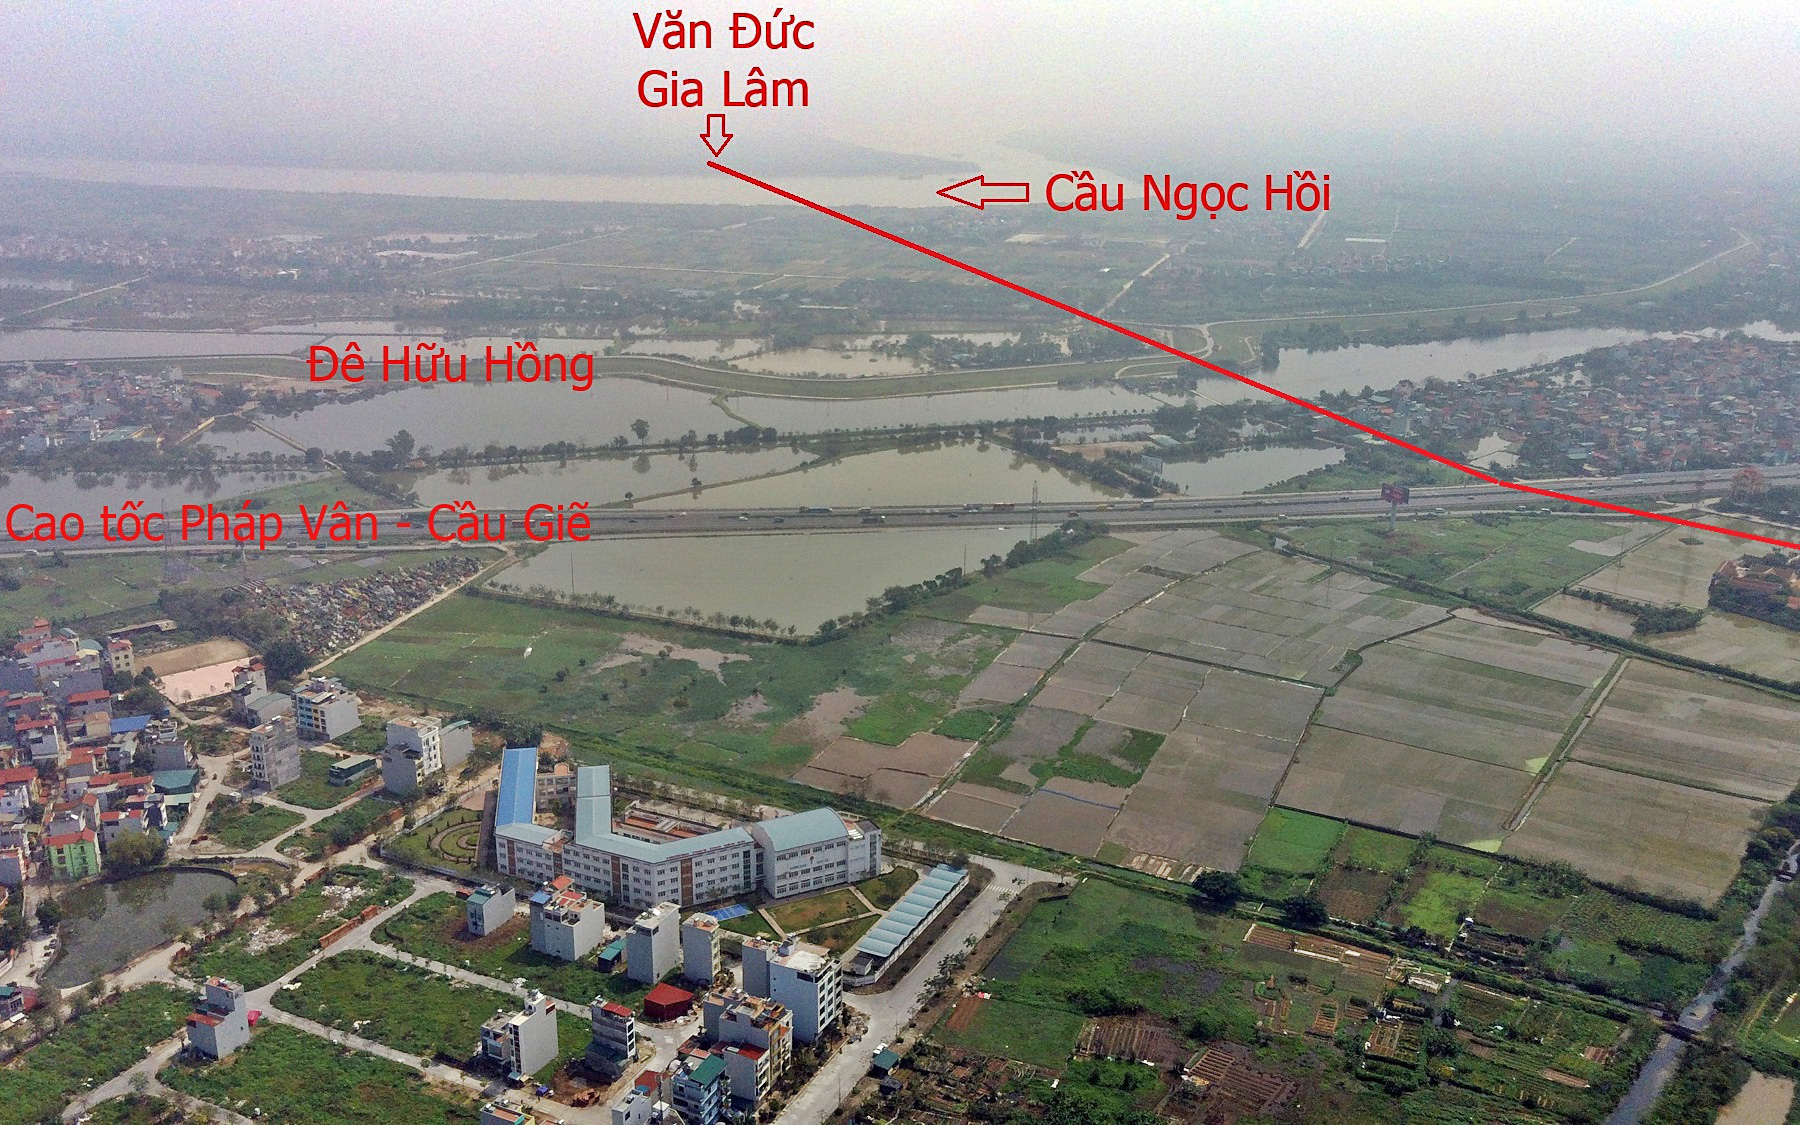 Cầu Ngọc Hồi có chiều dài khoảng 13,8km, thuộc địa bàn quận Hà Đông và huyện Thanh Trì, TP Hà Nội.